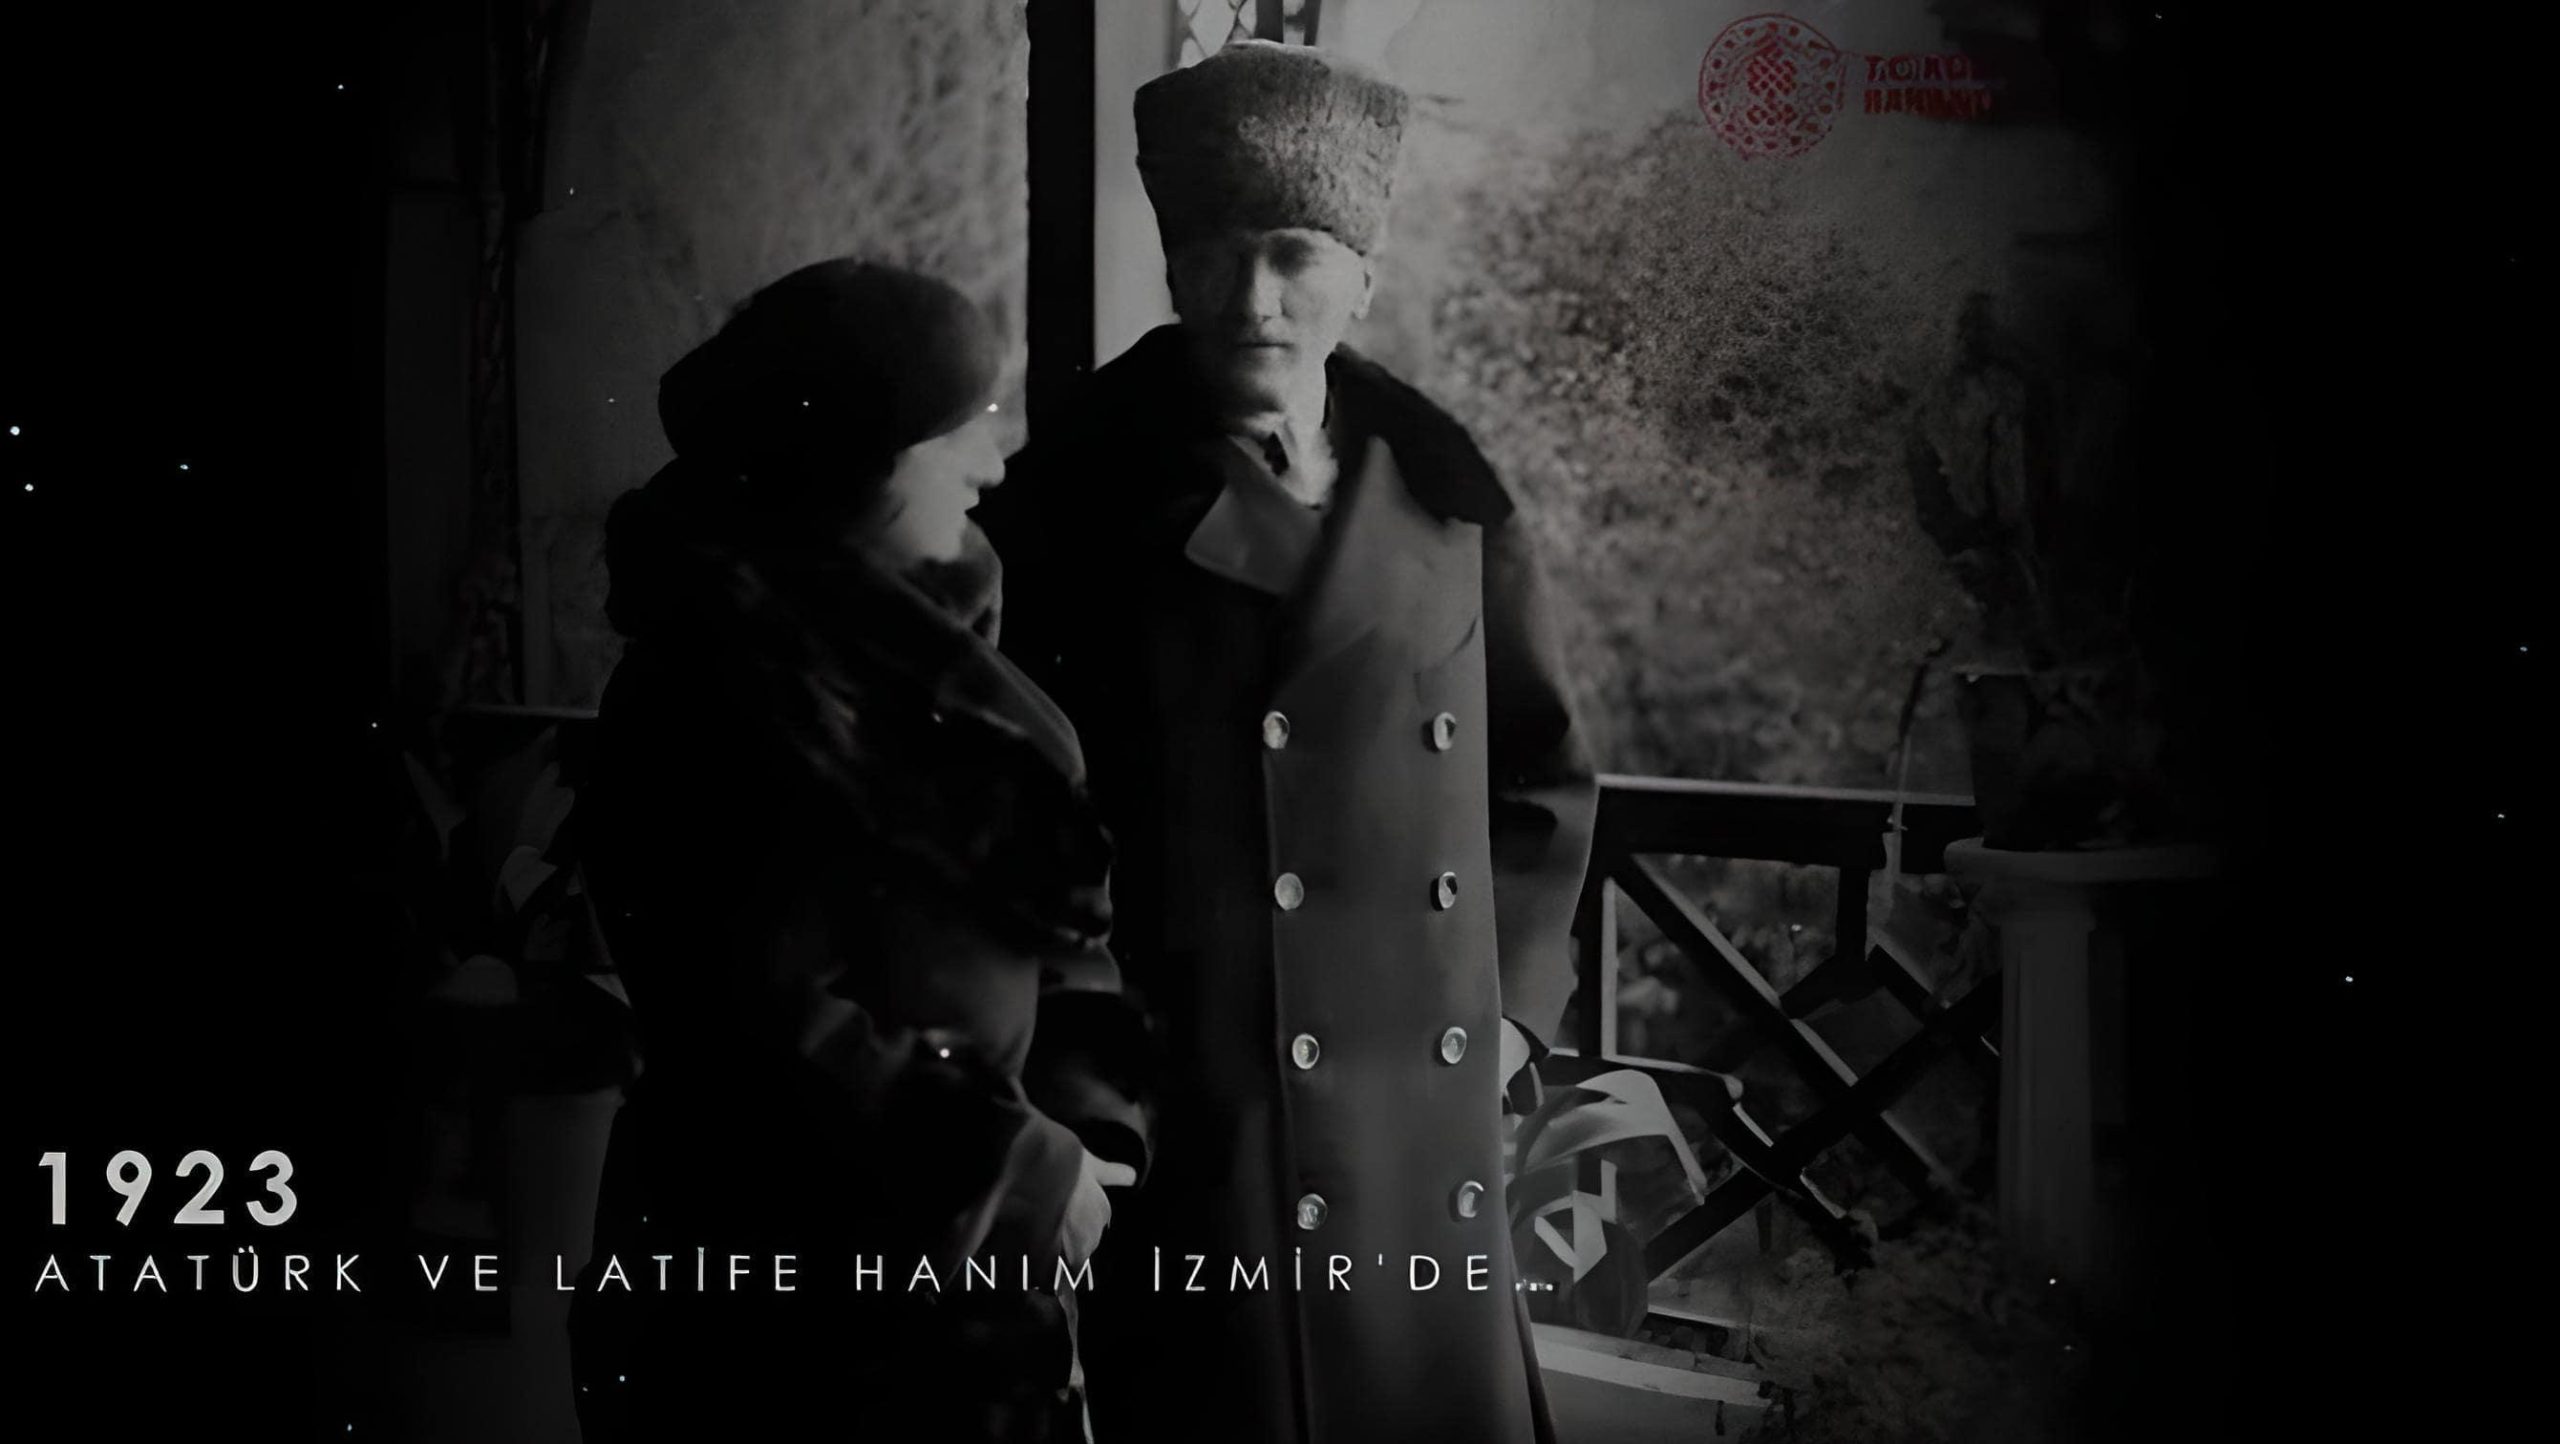 Nieuwe beelden van Atatürk gepubliceerd op nationaal archief